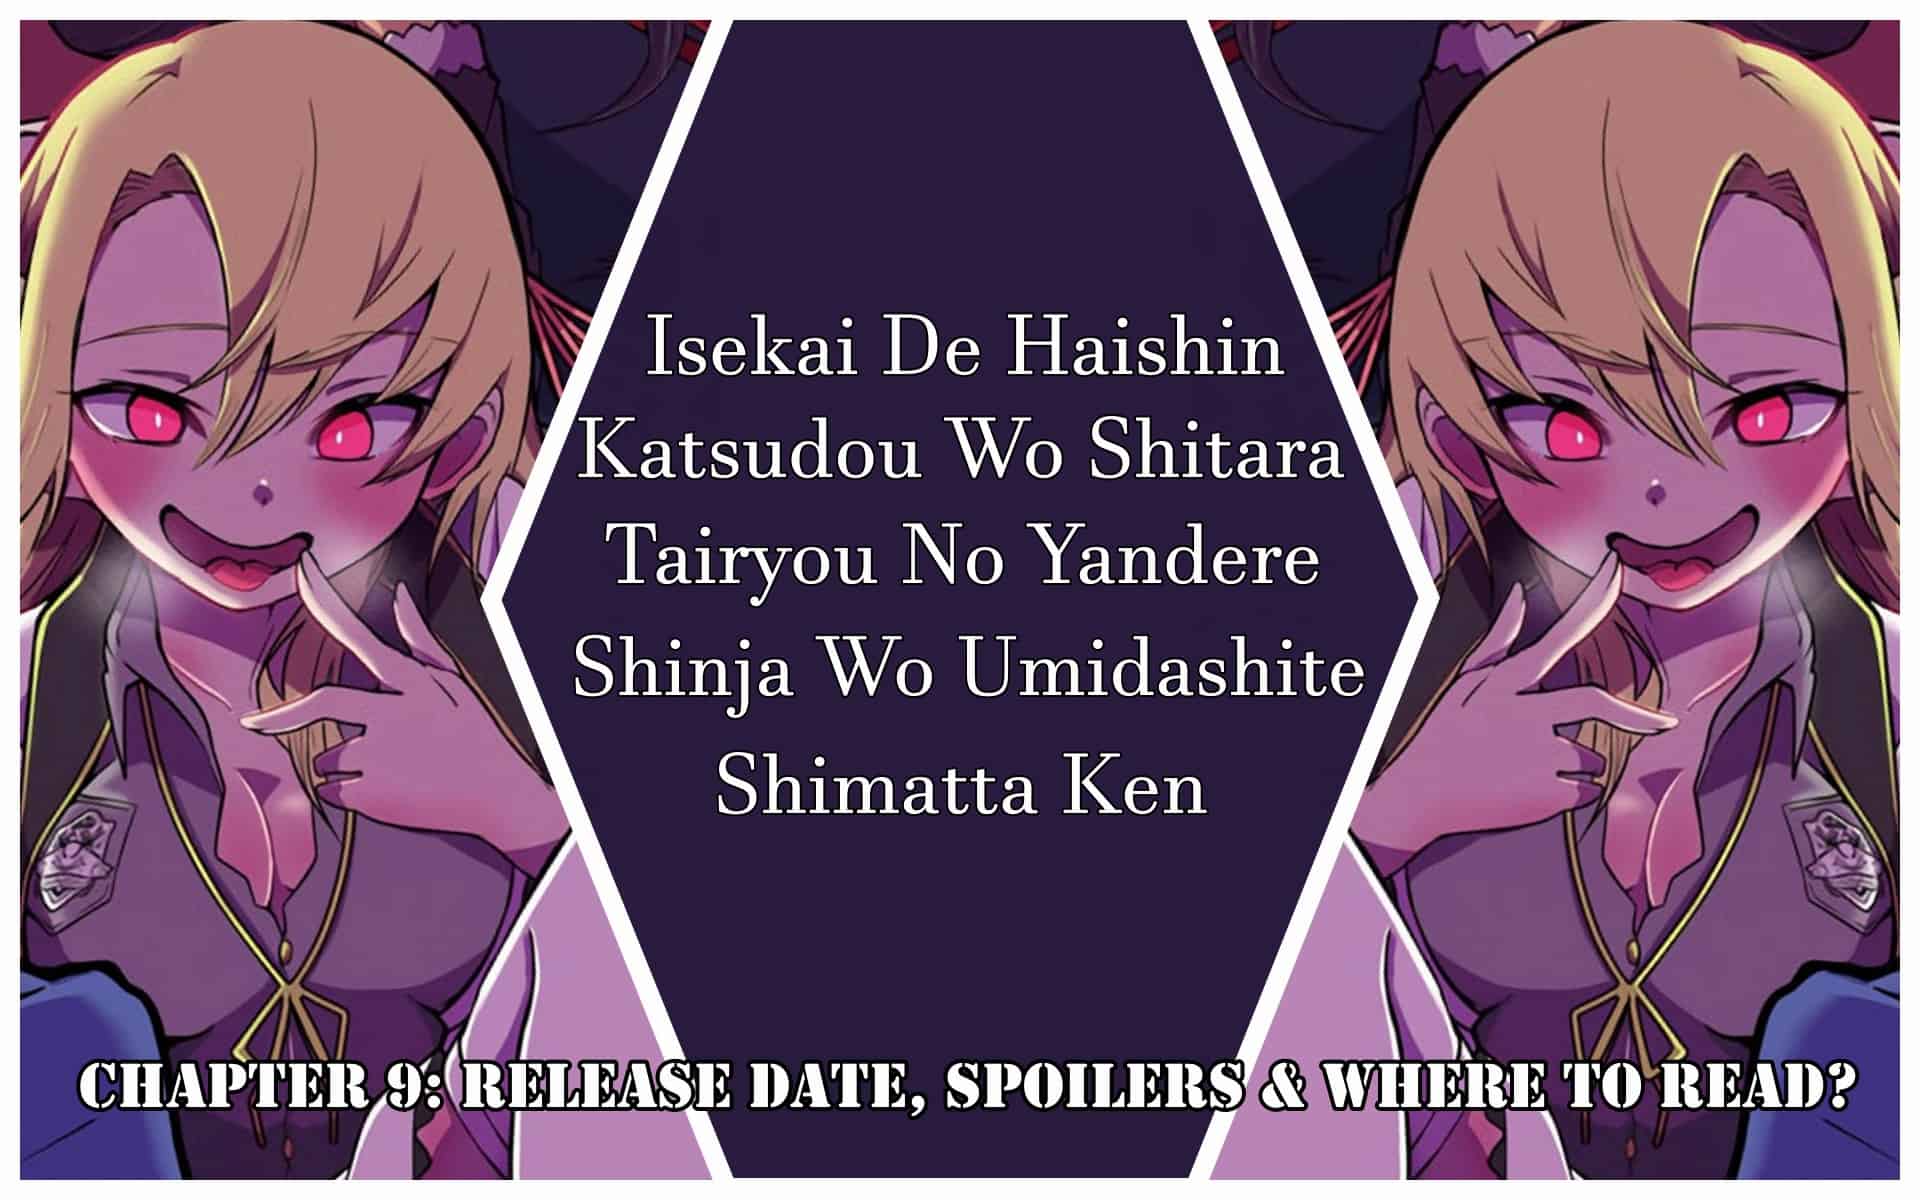 Isekai De Haishin Katsudou Wo Shitara Tairyou No Yandere Shinja Wo Umidashite Shimatta Ken Chapter 9: Release Date, Spoilers & Where to Read?